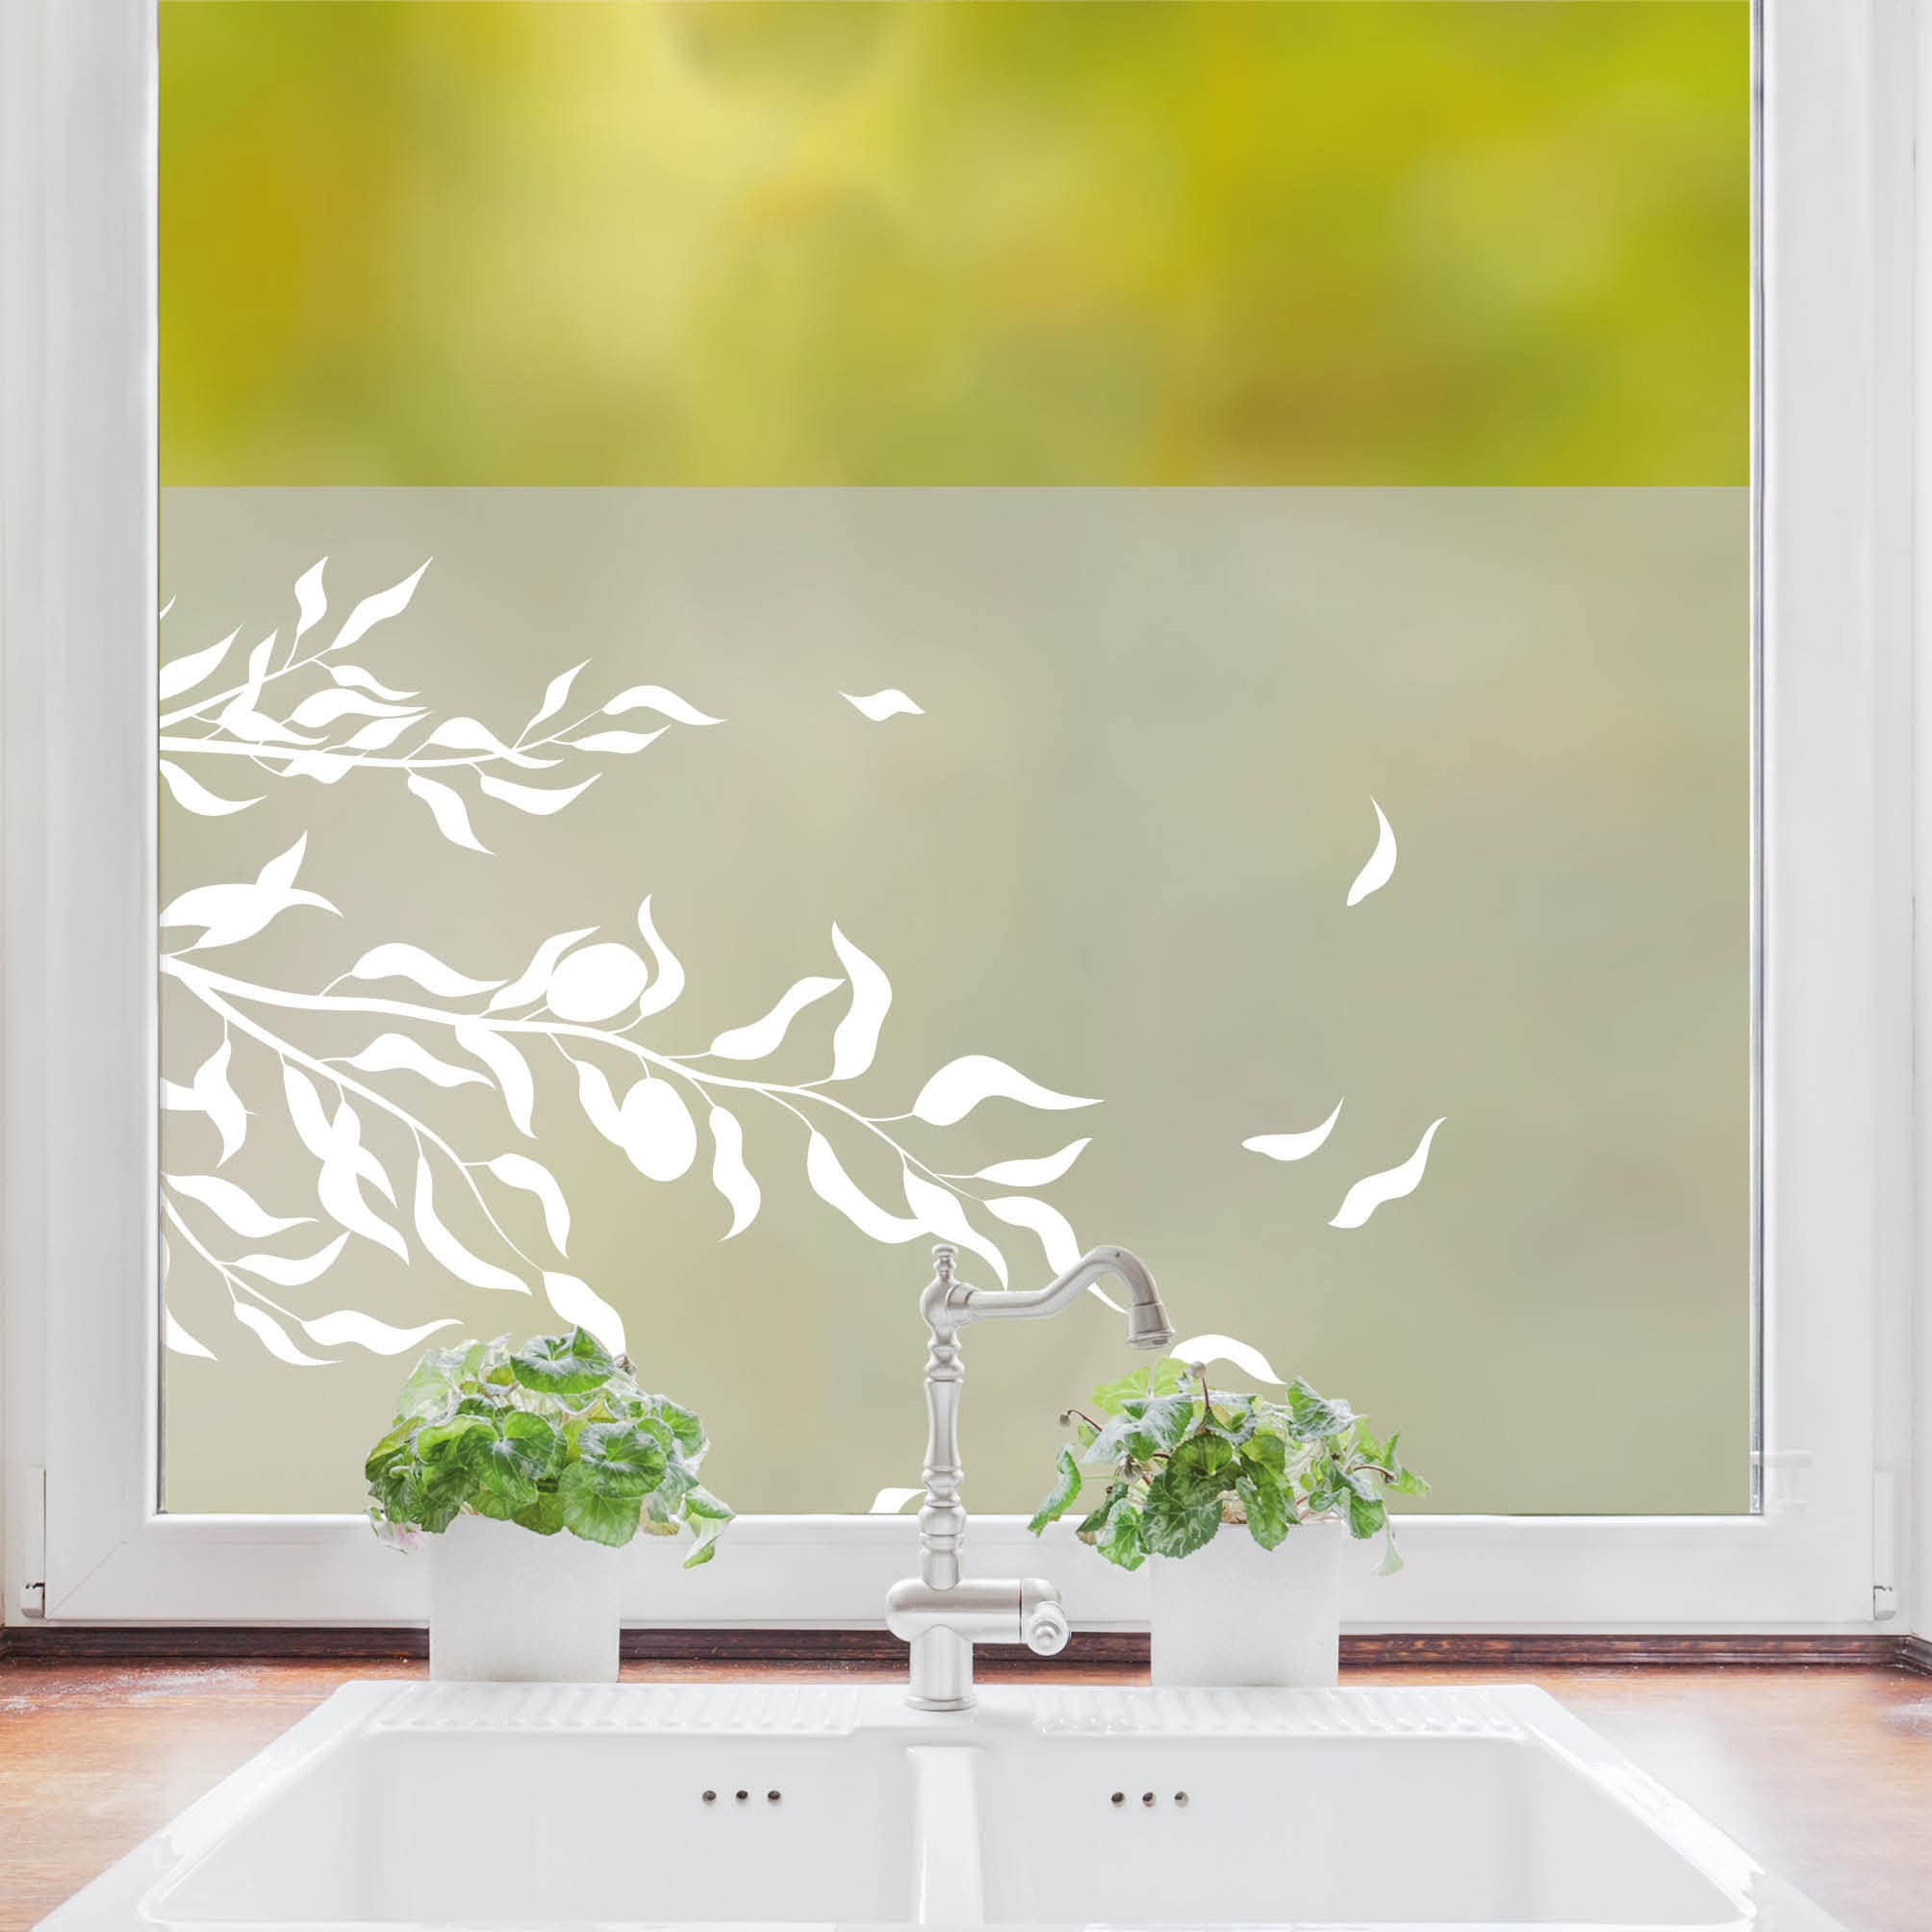 Sichtschutzfolie Olive Olivenzweig florale Fensterfolie Fensterdeko Milchglasfolie Folie Fenster Aufkleber Sichtschutz